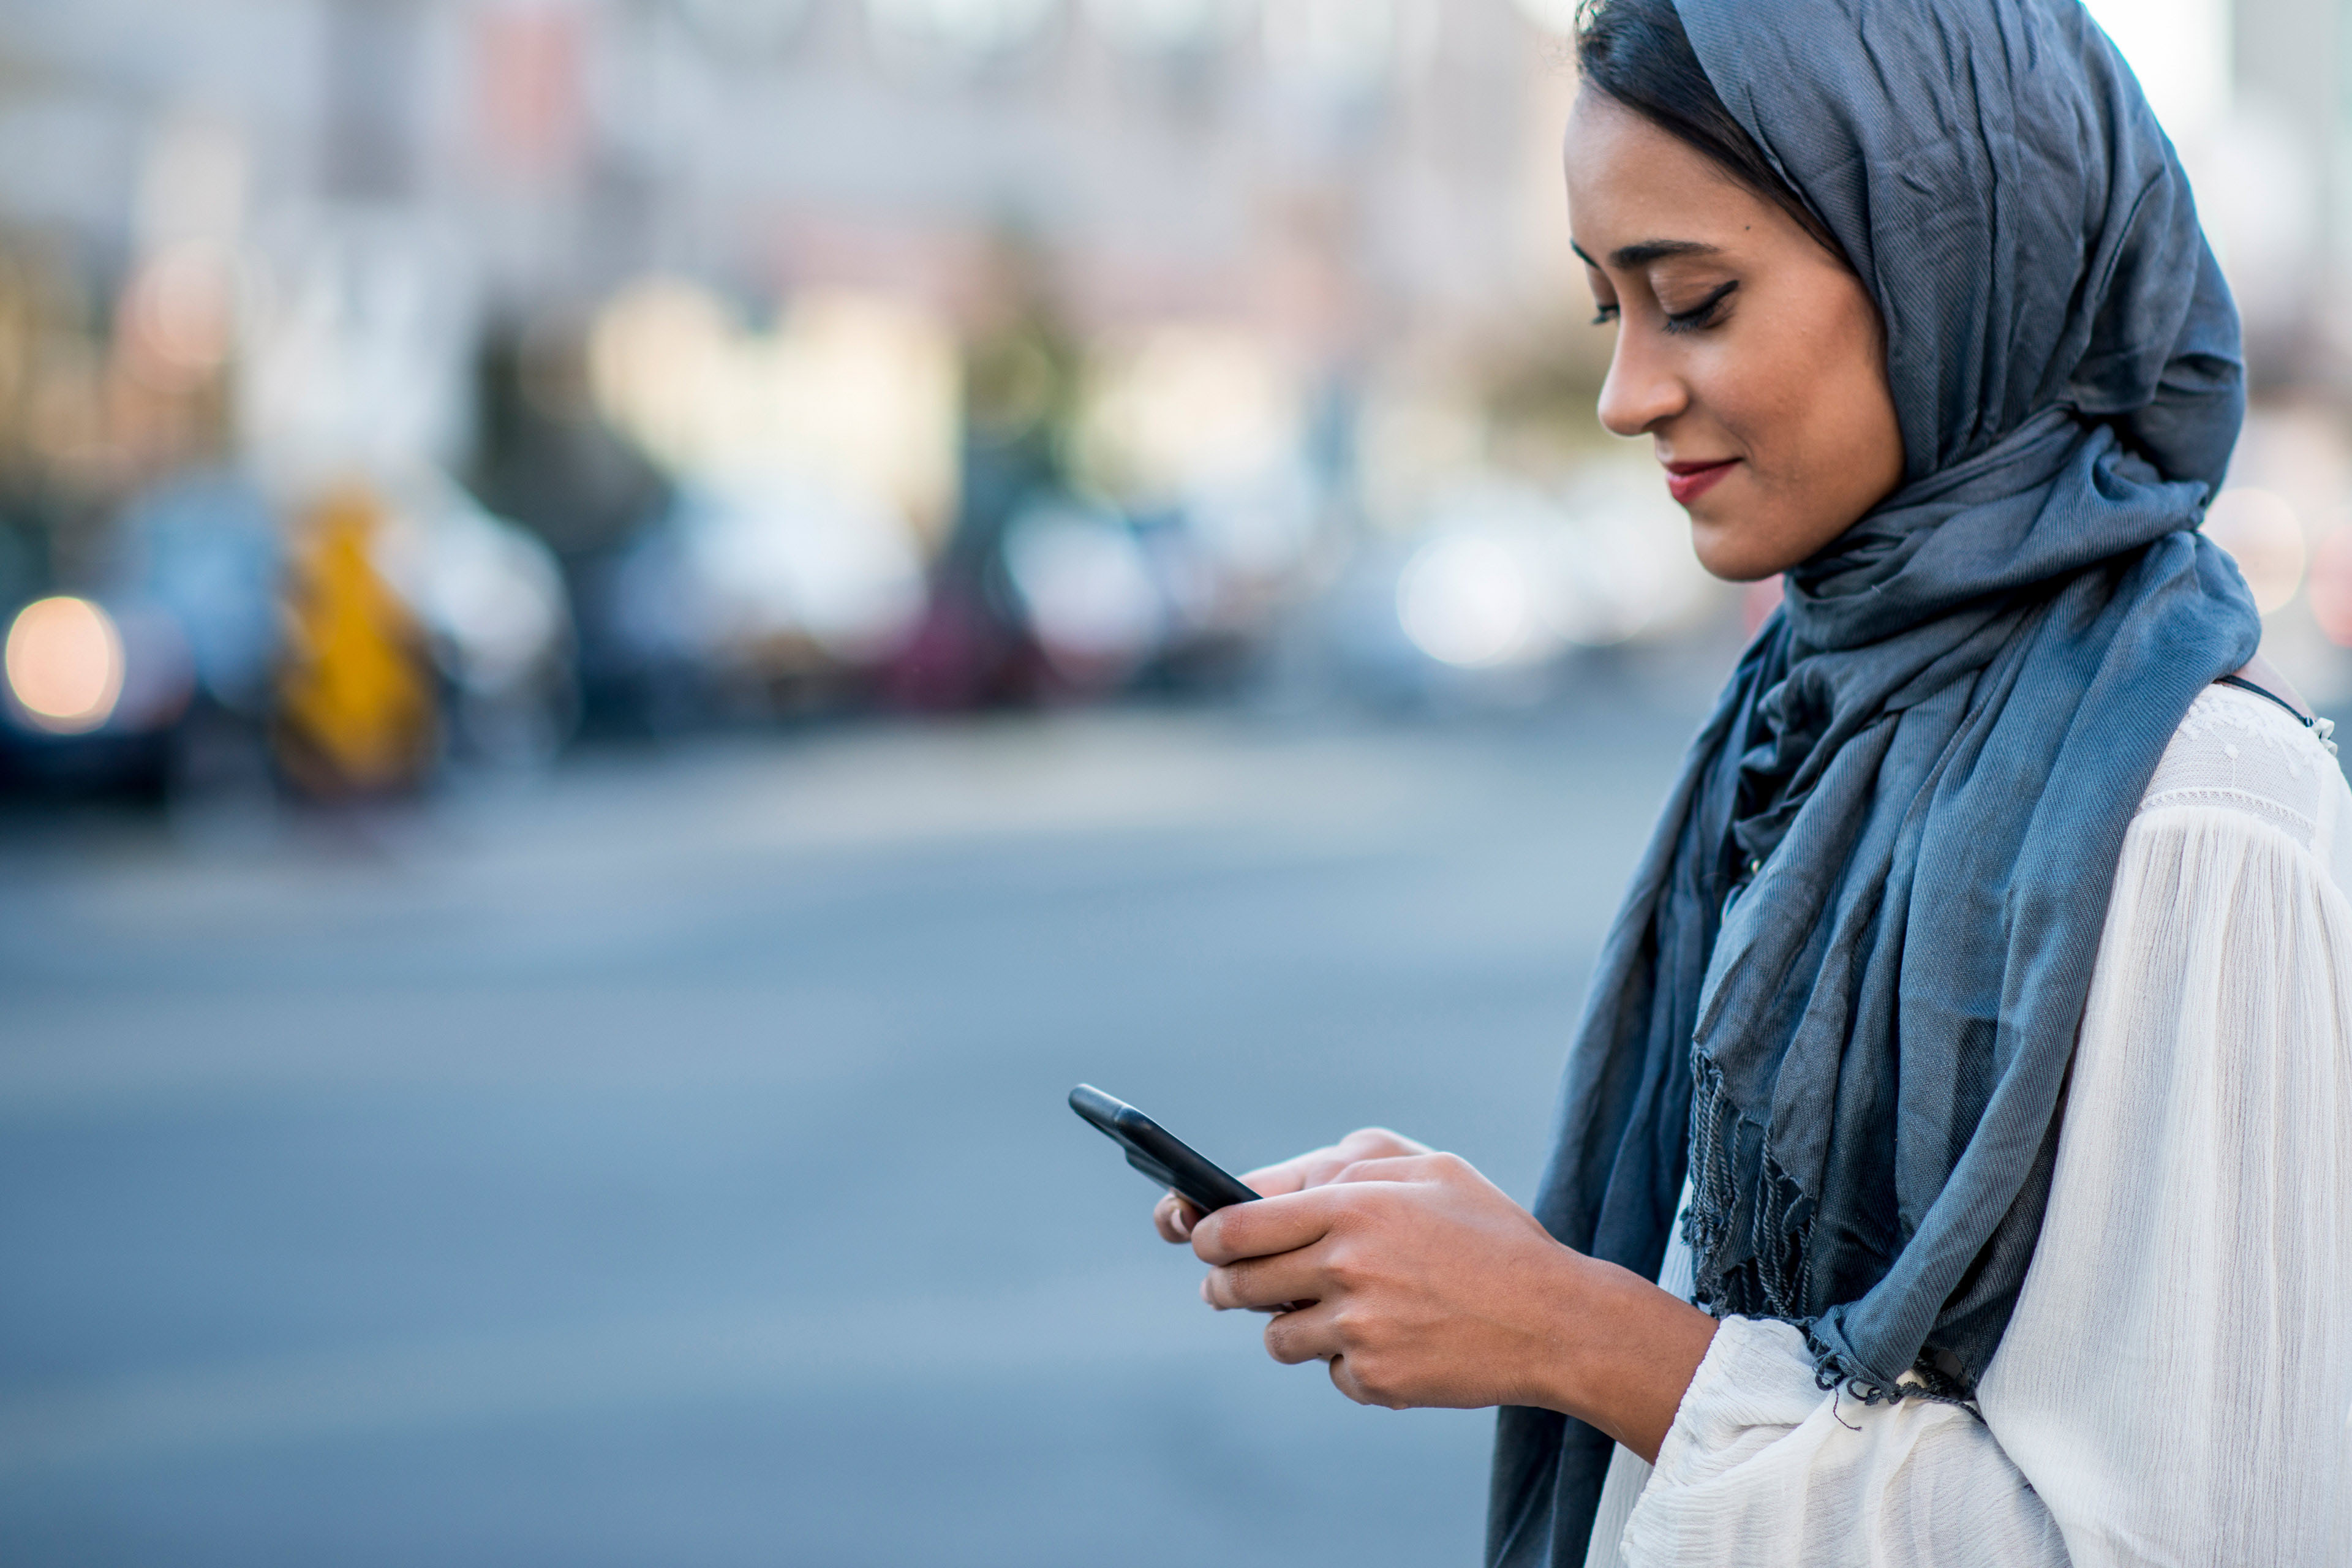 
            Mujer con pañuelo en la cabeza verifica su smartphone
        